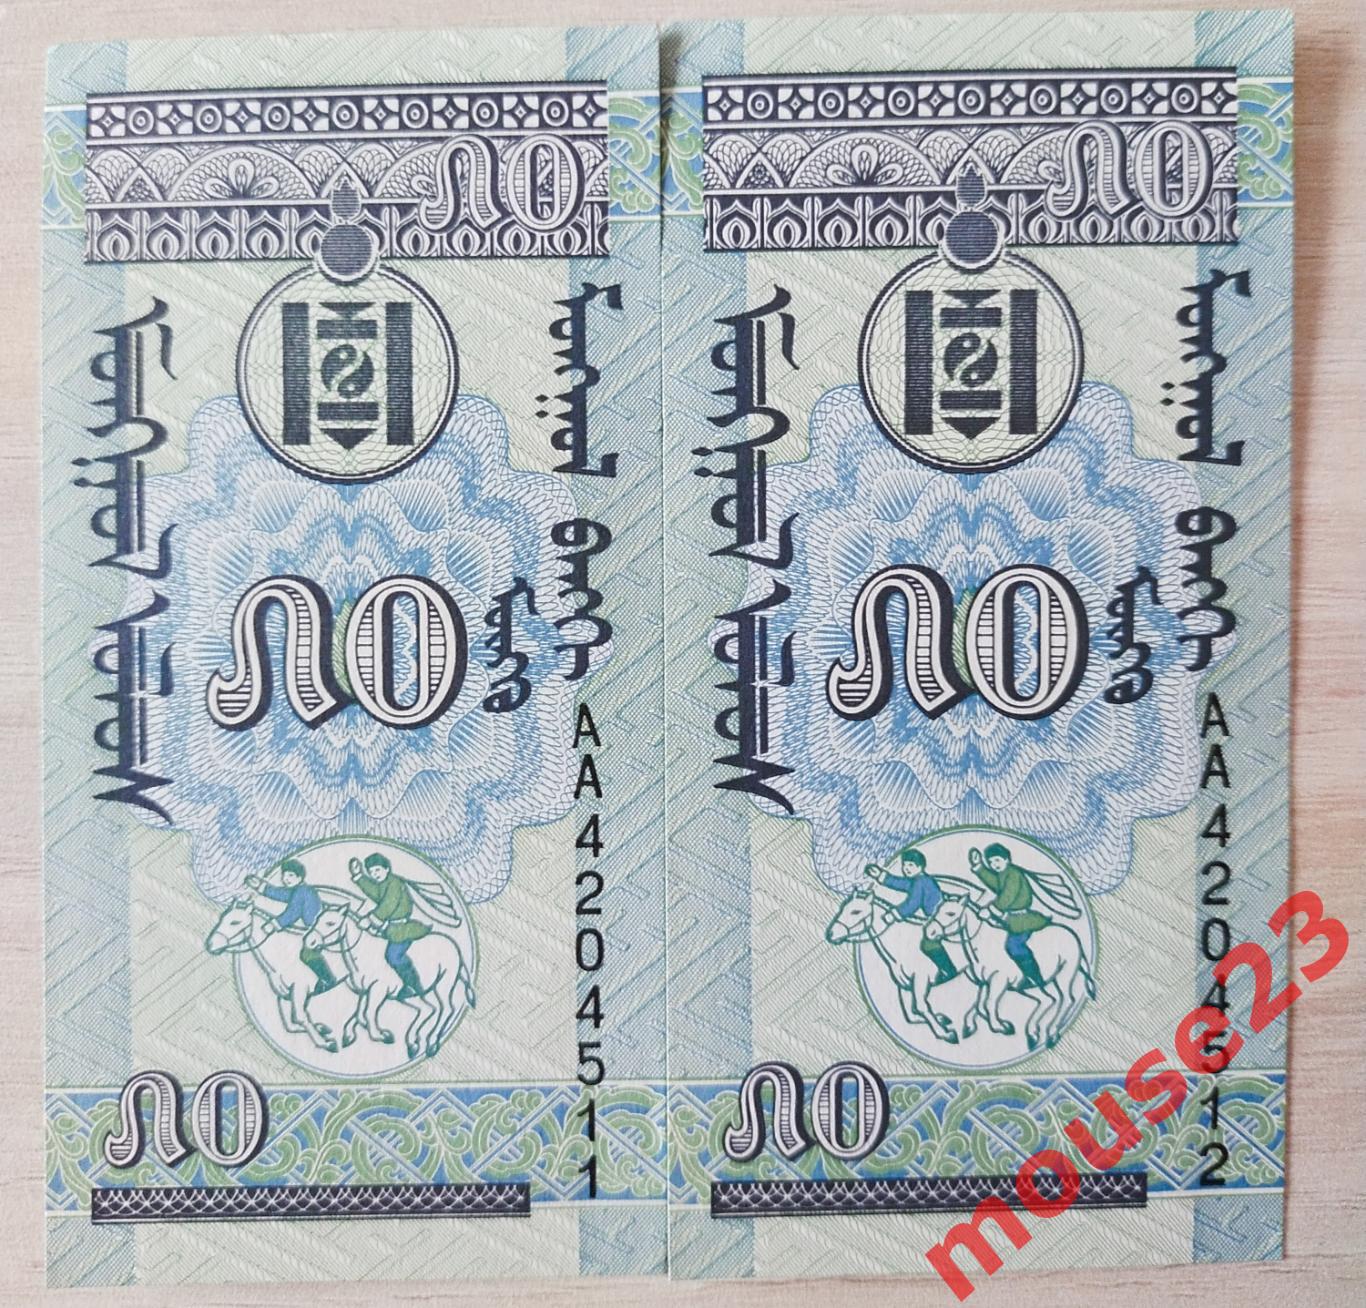 Монголия Банкнота 50 менге 1993 год UNC 2 номера подряд